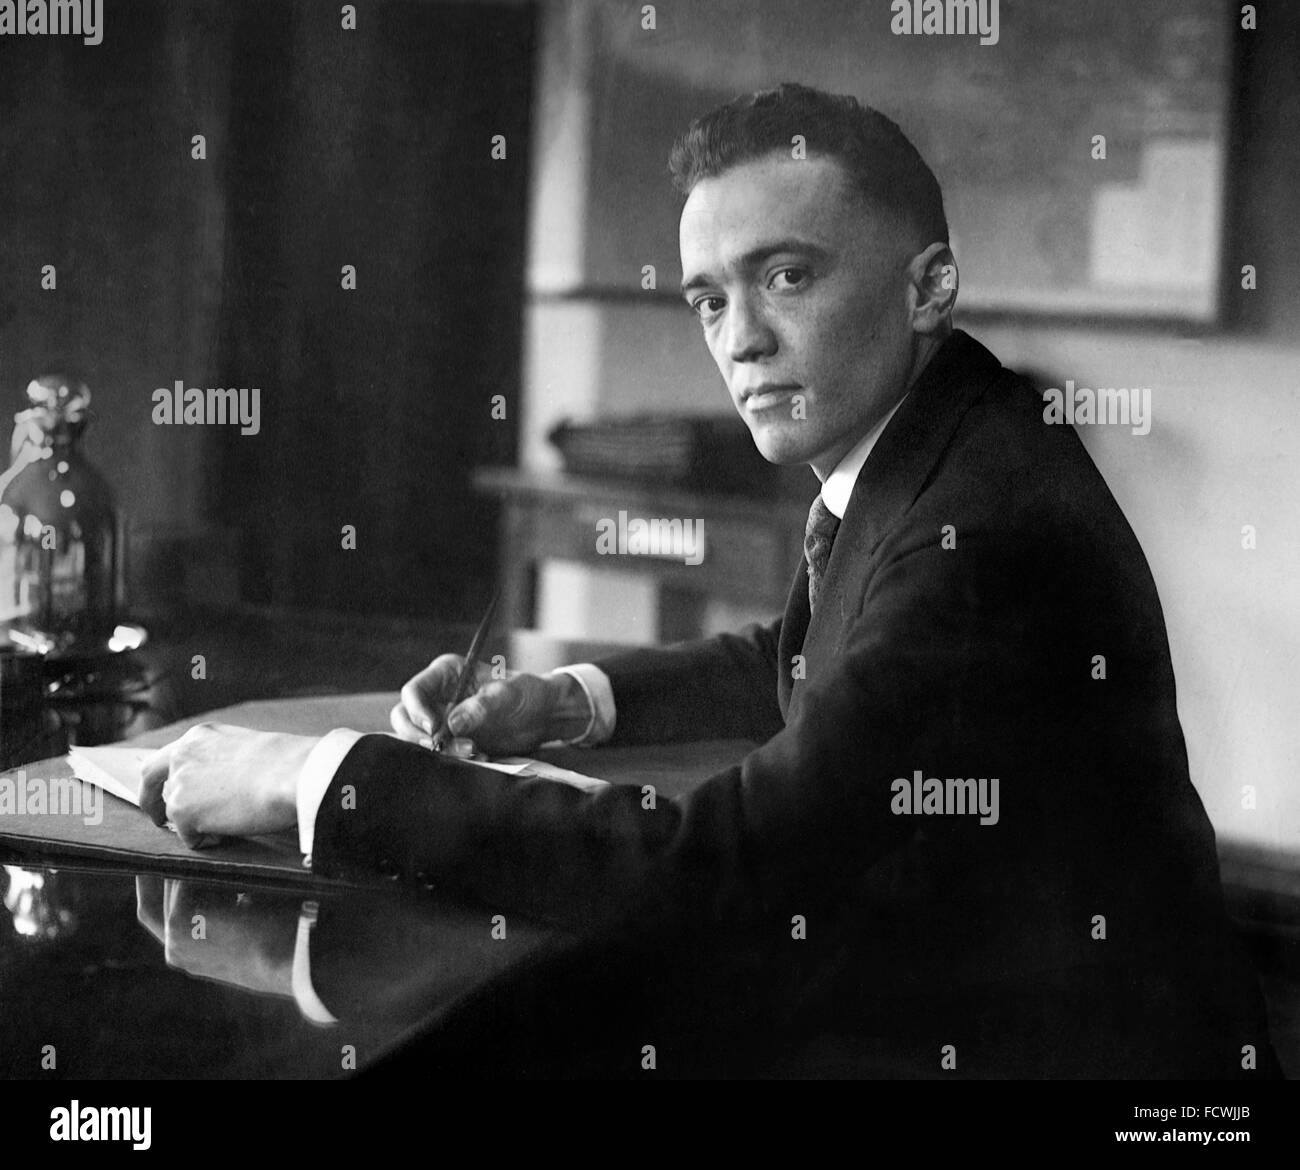 J. Edgar Hoover, le premier directeur du Federal Bureau of Investigation (FBI) des Etats-Unis, décembre 1924. Quand cette photo a été prise, il n'avait que 29 ans et Directeur du Bureau d'enquête, précurseur de l'IBF. Banque D'Images